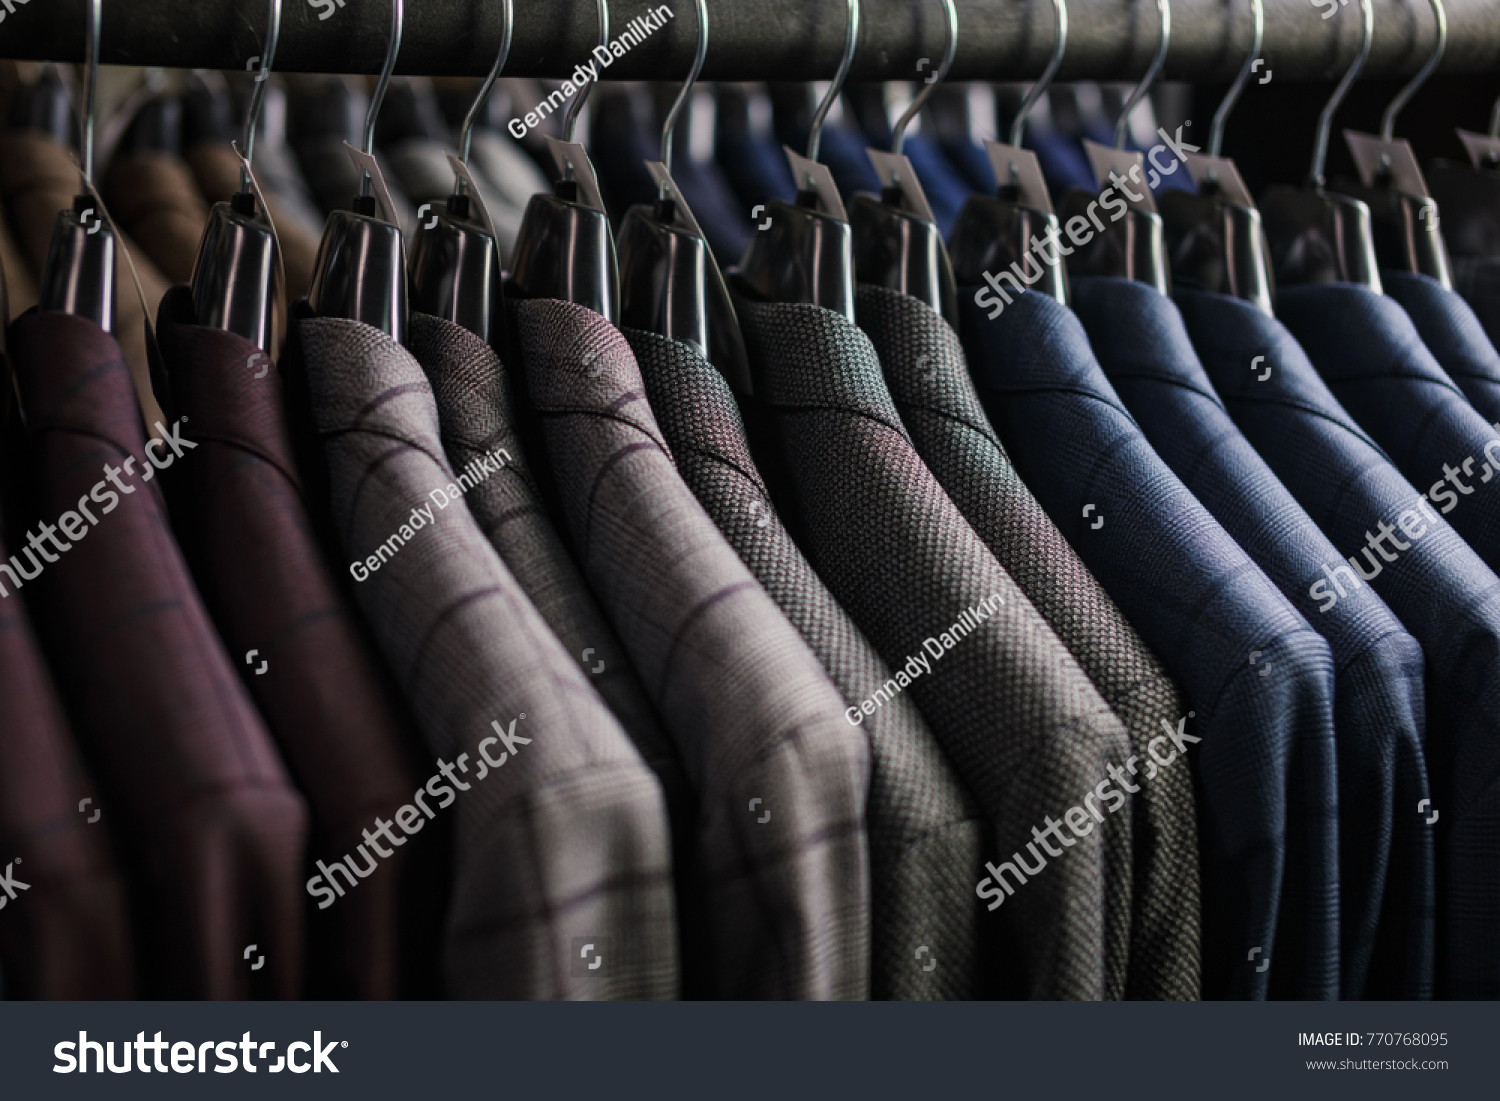 Row of men suit jackets on hangers #770768095